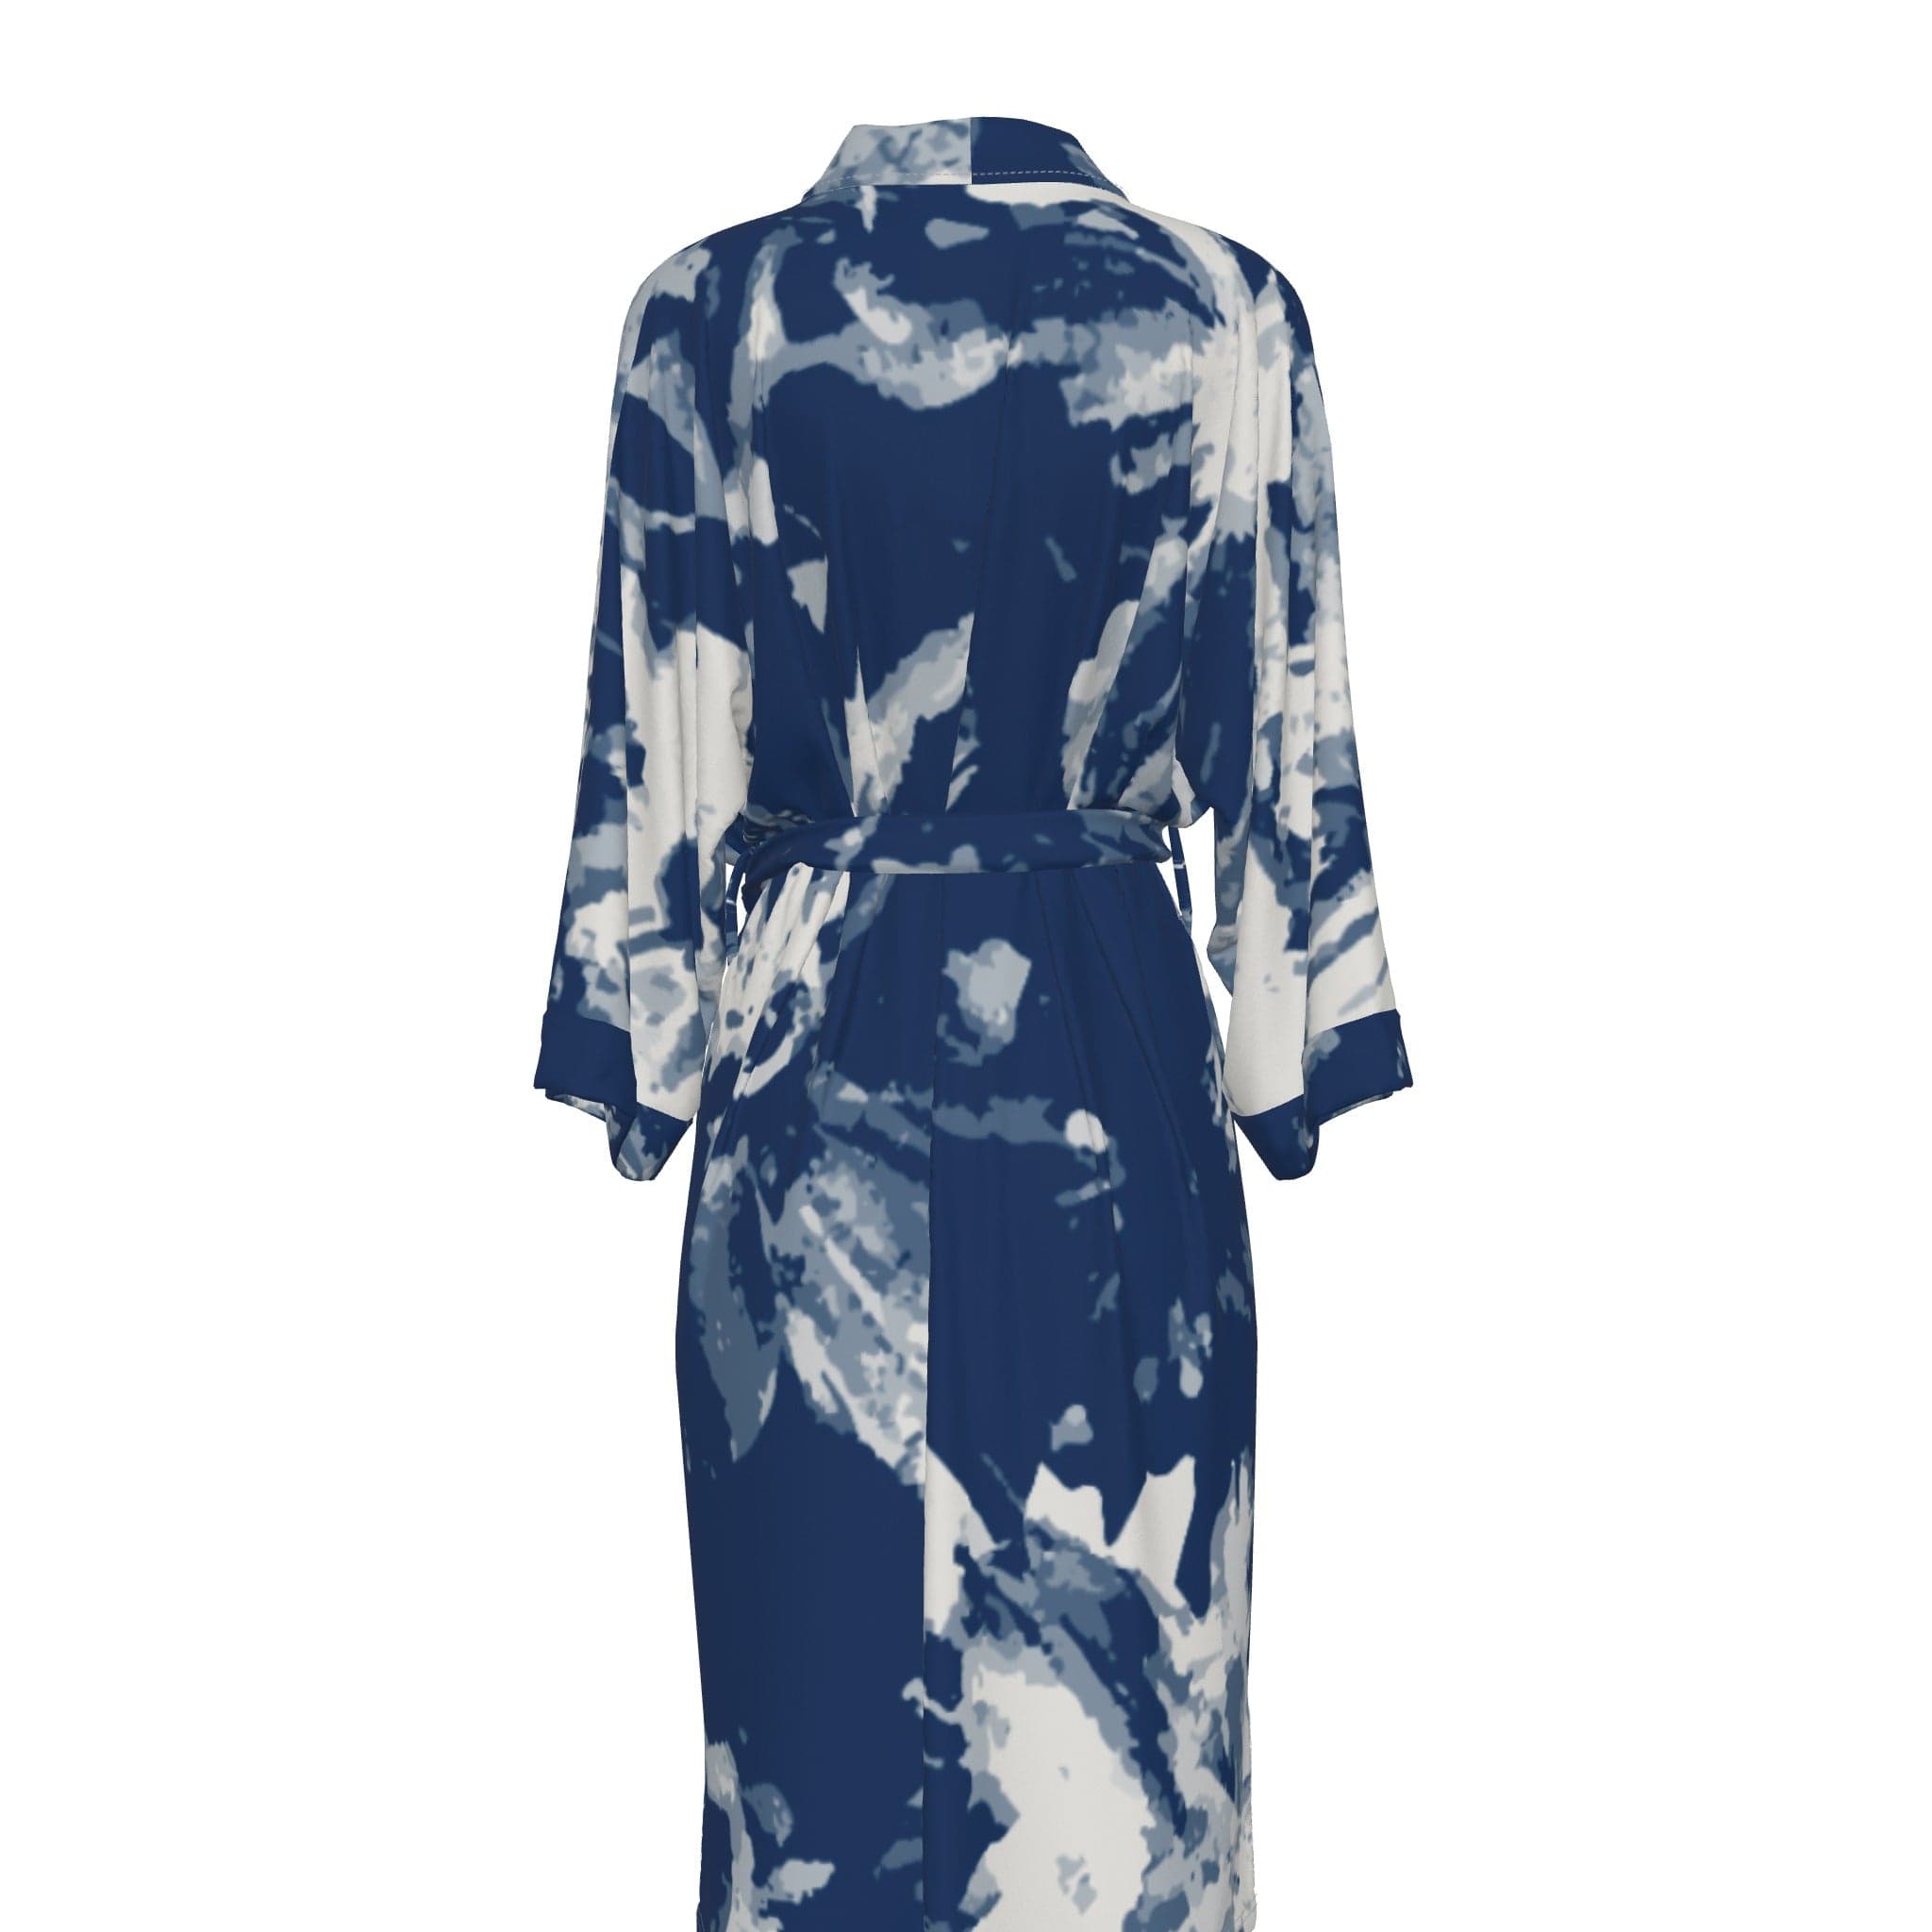 Yoycol All-Over Print Women's Satin Kimono Robe